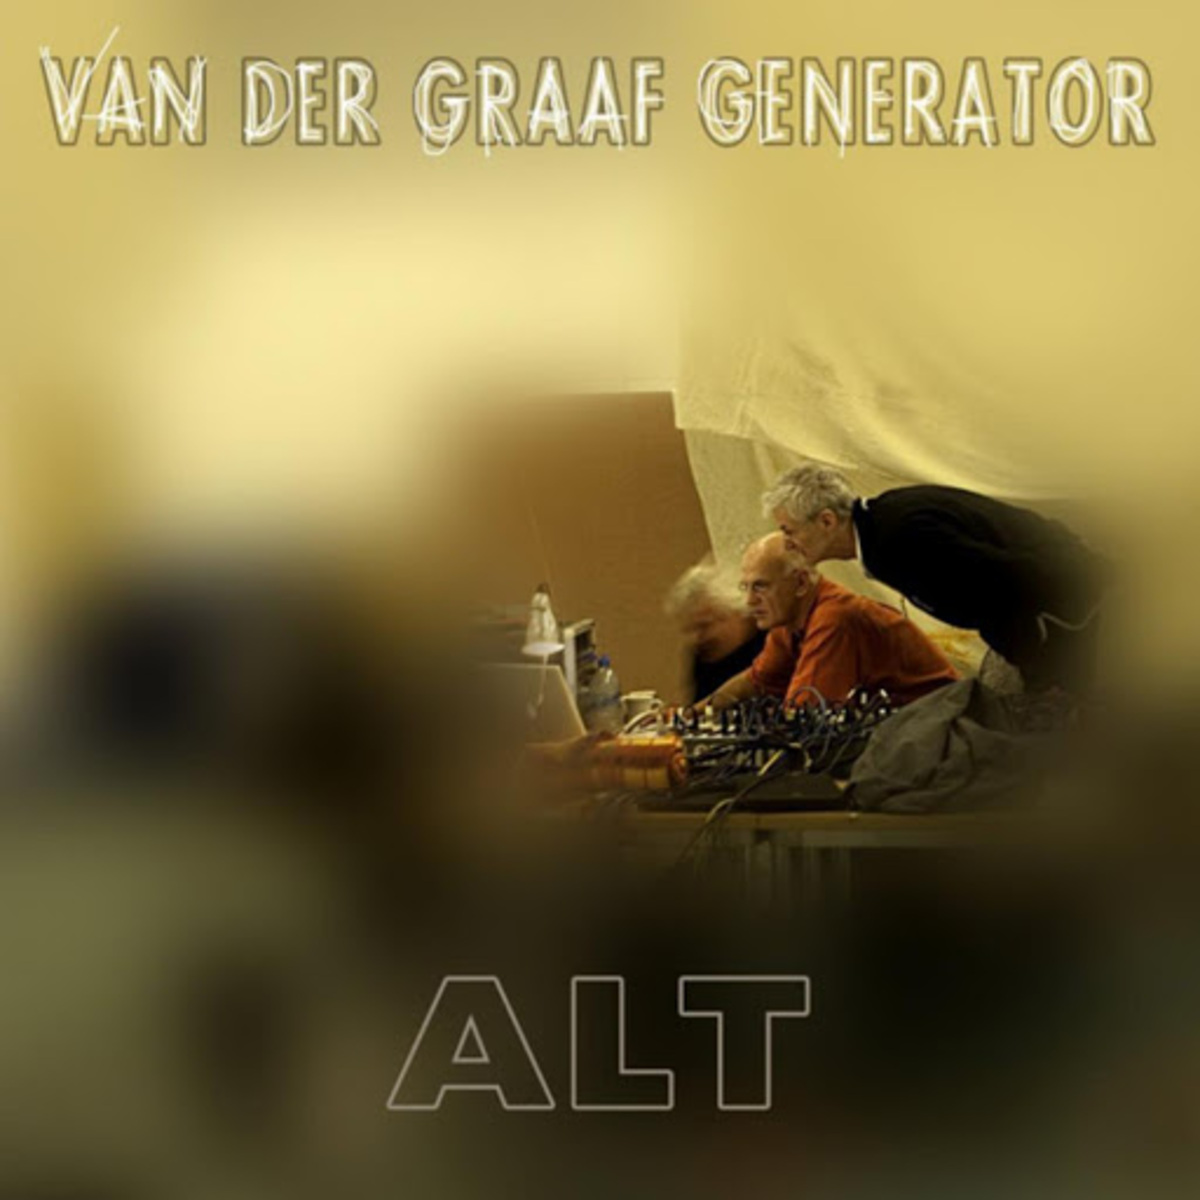 Van-der-graaf-generator-album-cover-alt